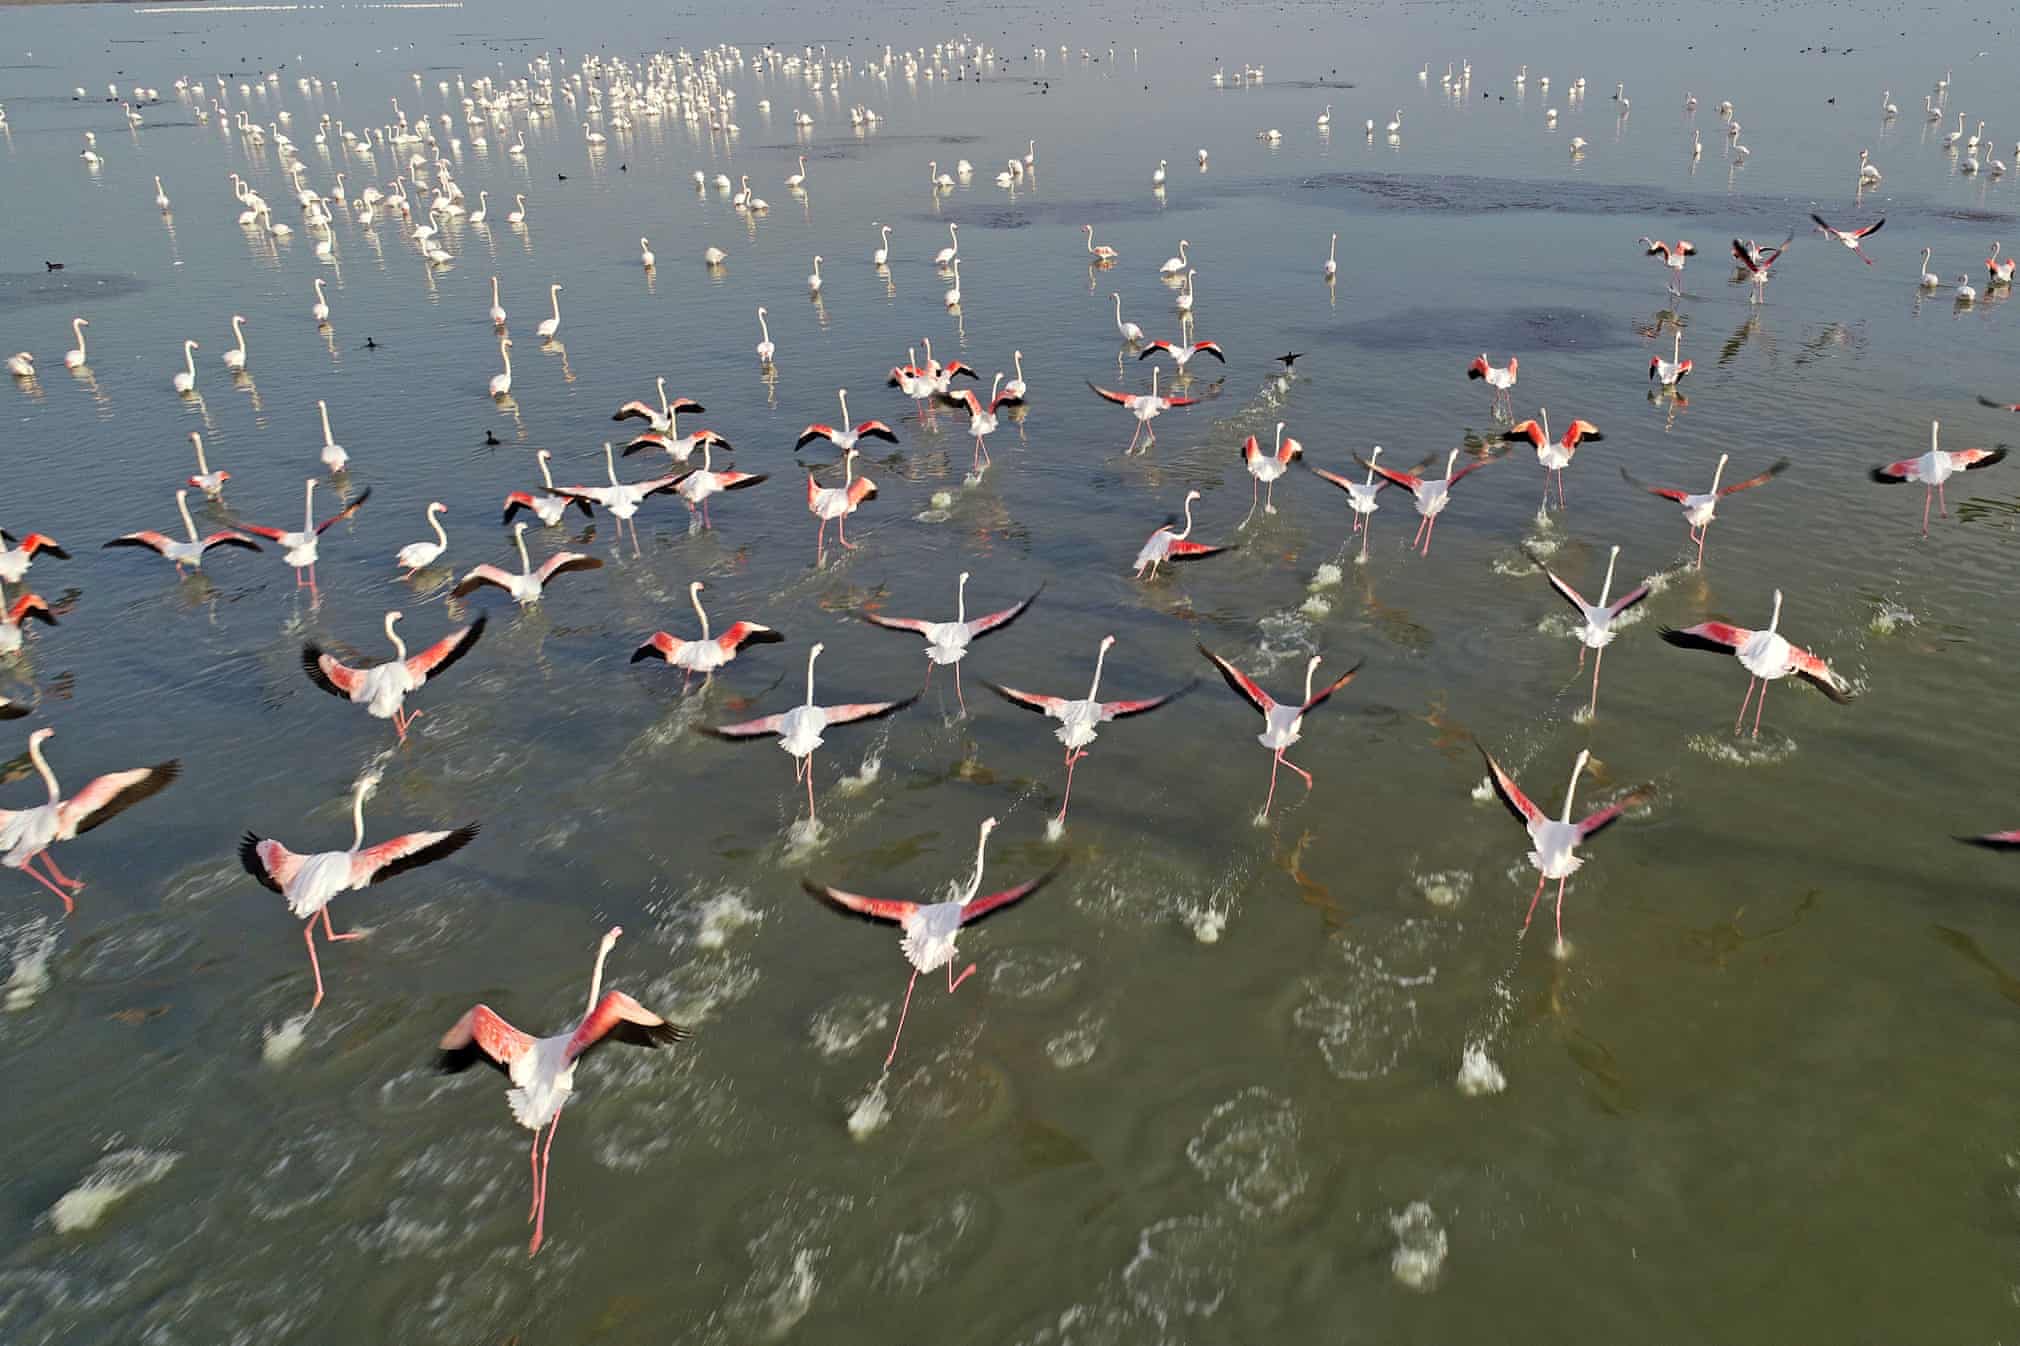 Turkiyaning Adana shahridagi Akyatan qo‘ltig‘ida yurgan flamingolar.